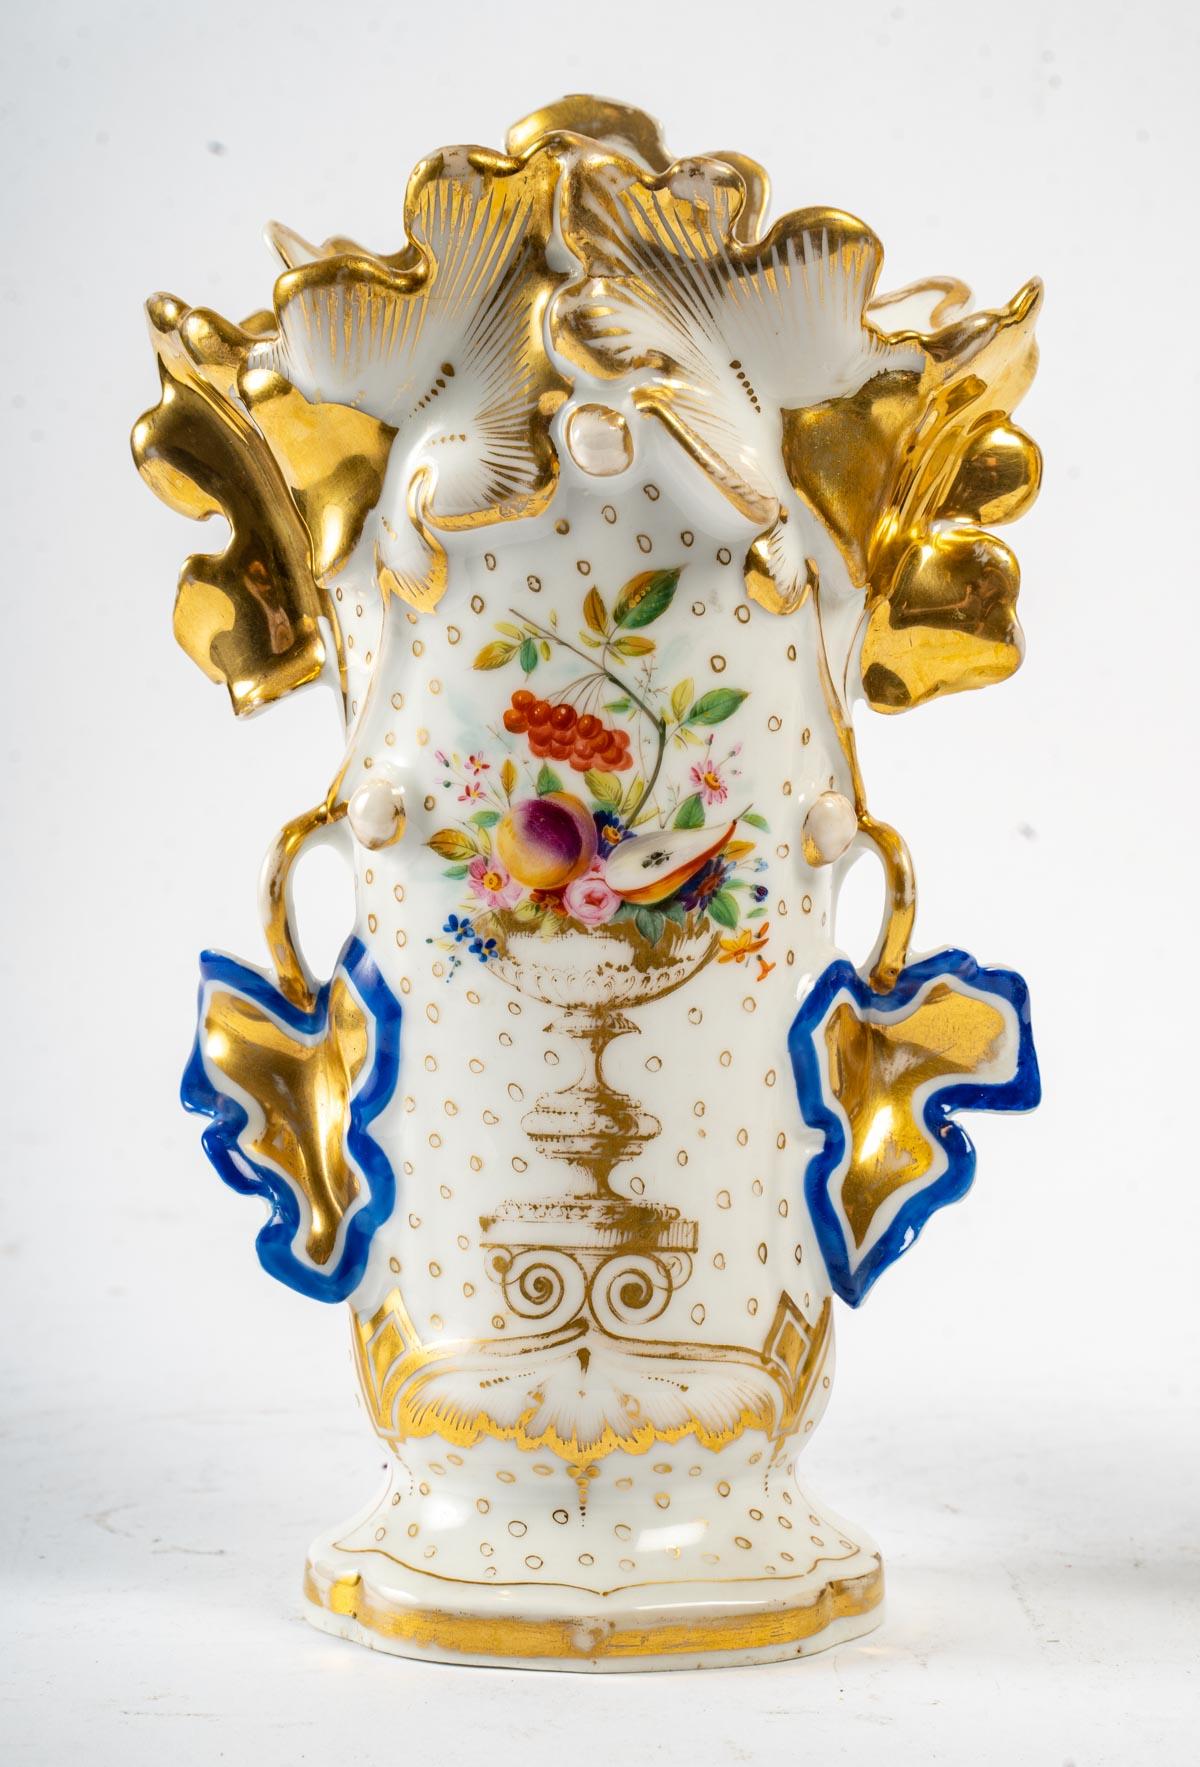 Pair of Paris porcelain vases, 19th century, 1880.
Measures: H: 27 cm, W: 16 cm, D: 11 cm.